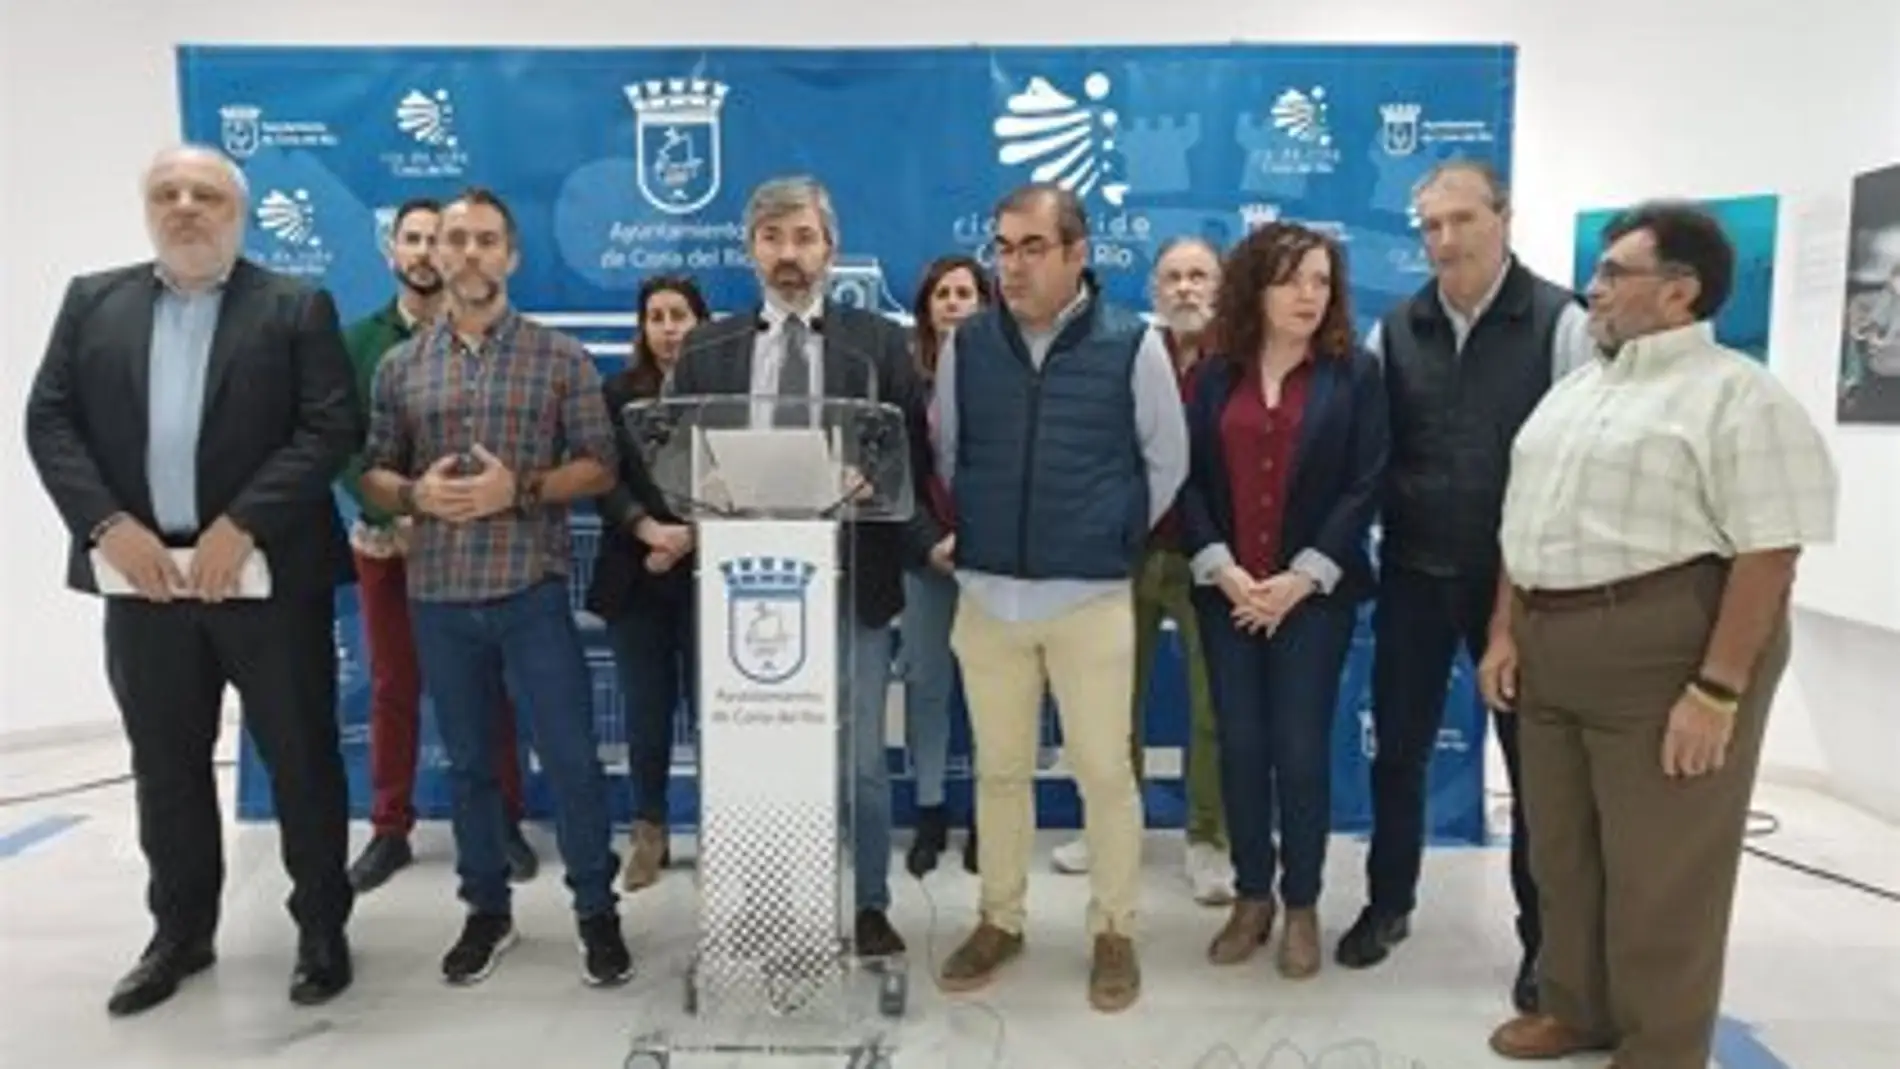 El alcalde de Coria, Modesto González, en el centro de la imagen arropado por miembros de su equipo de Gobierno.